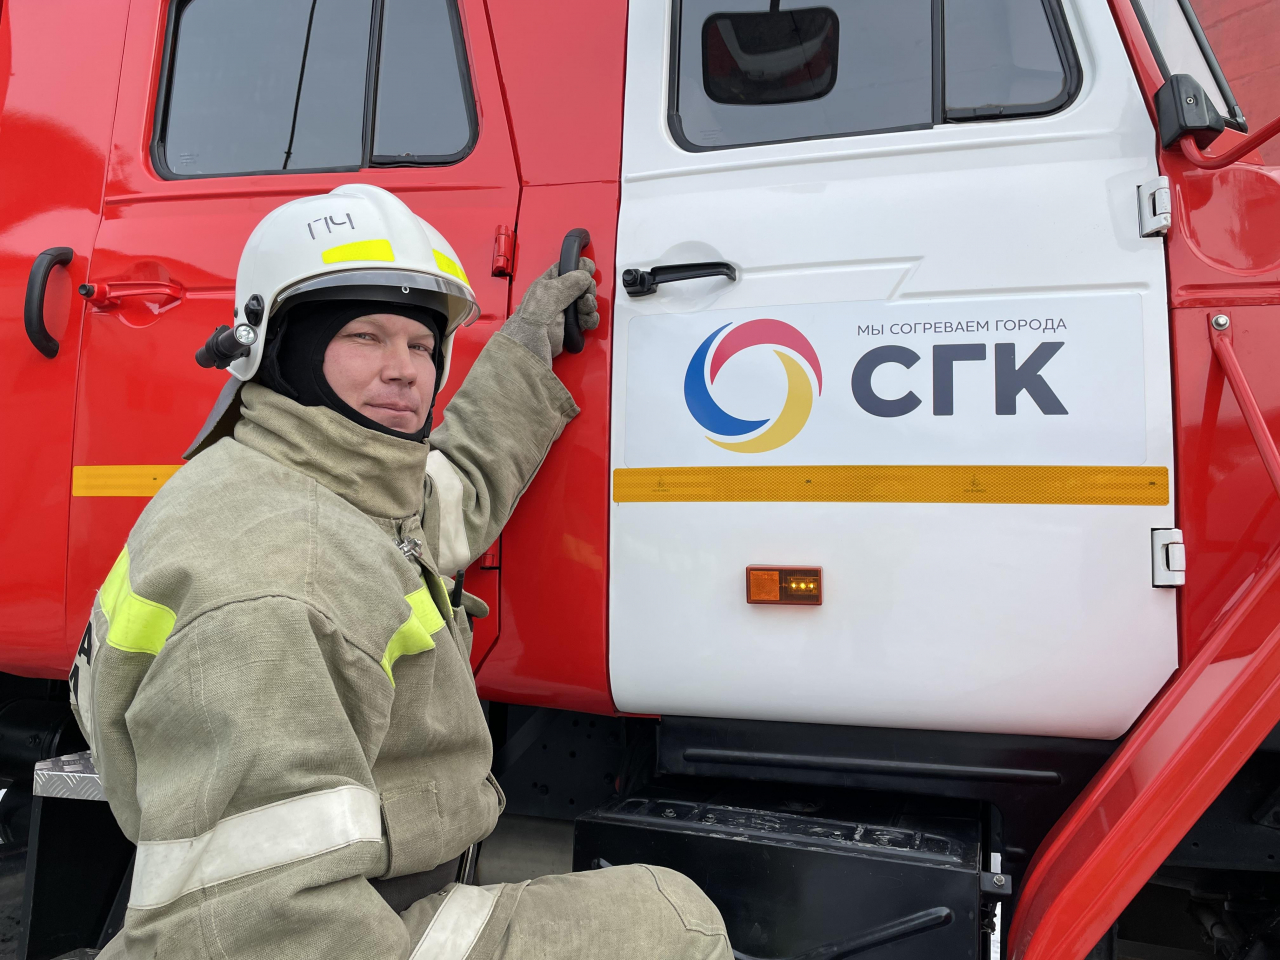 Пожарный Приморской ГРЭС Максим Матвеев: стратегия тяжелоатлета из Лучегорска, которая помогает побеждать в спорте и жизни